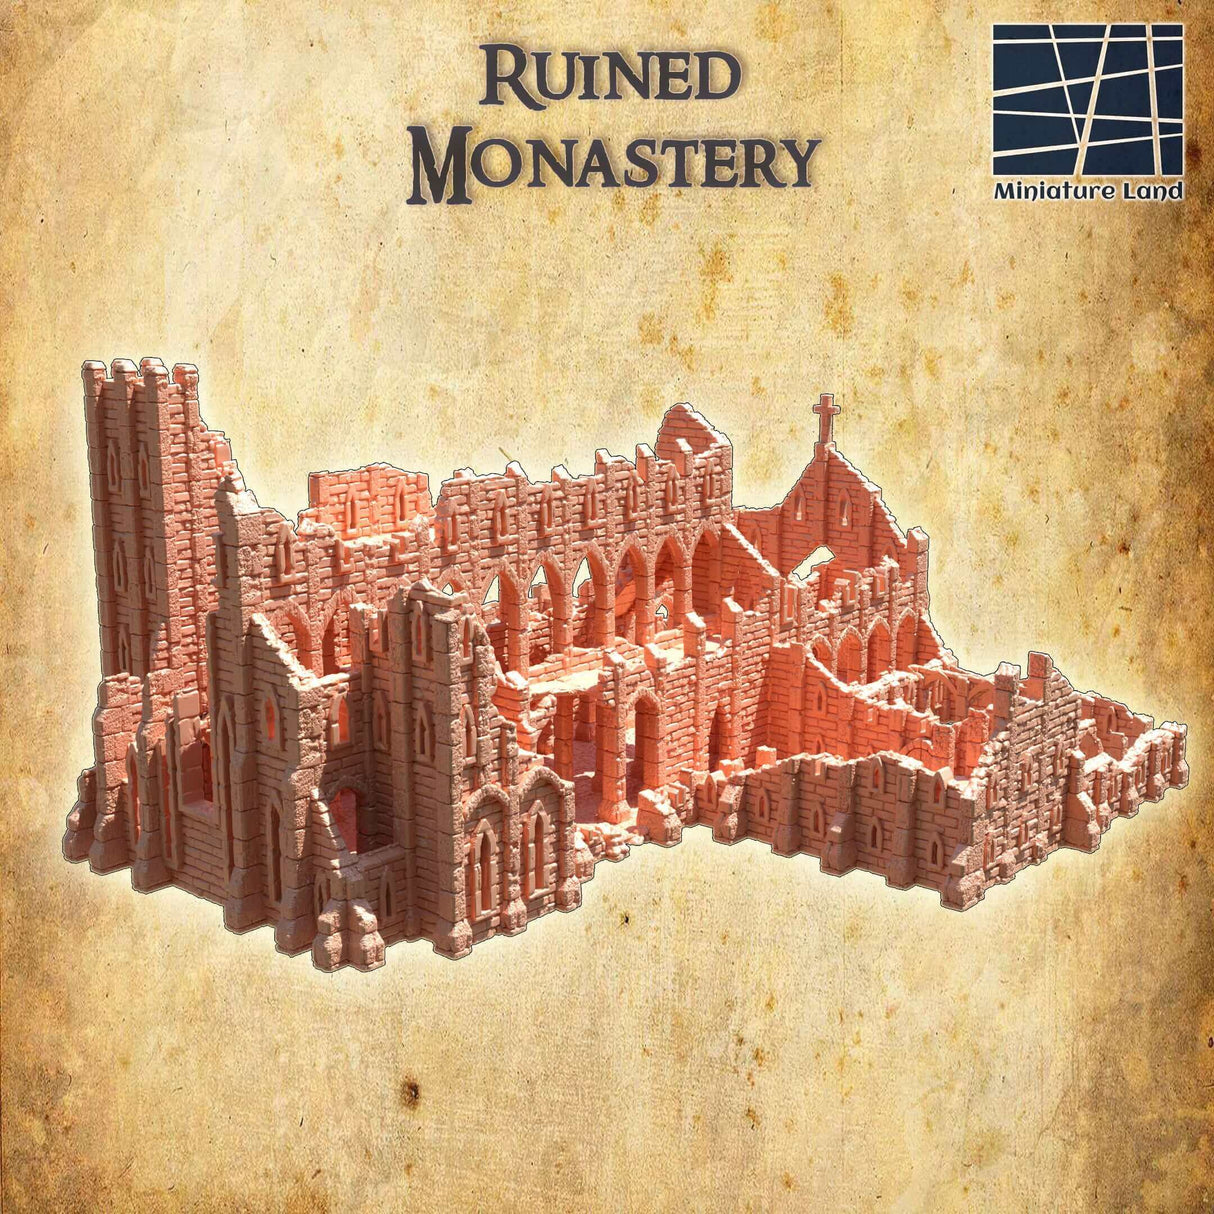 Beispiel für eine Spielrunde mit dem Ruined Monastery Tabletop-Terrain